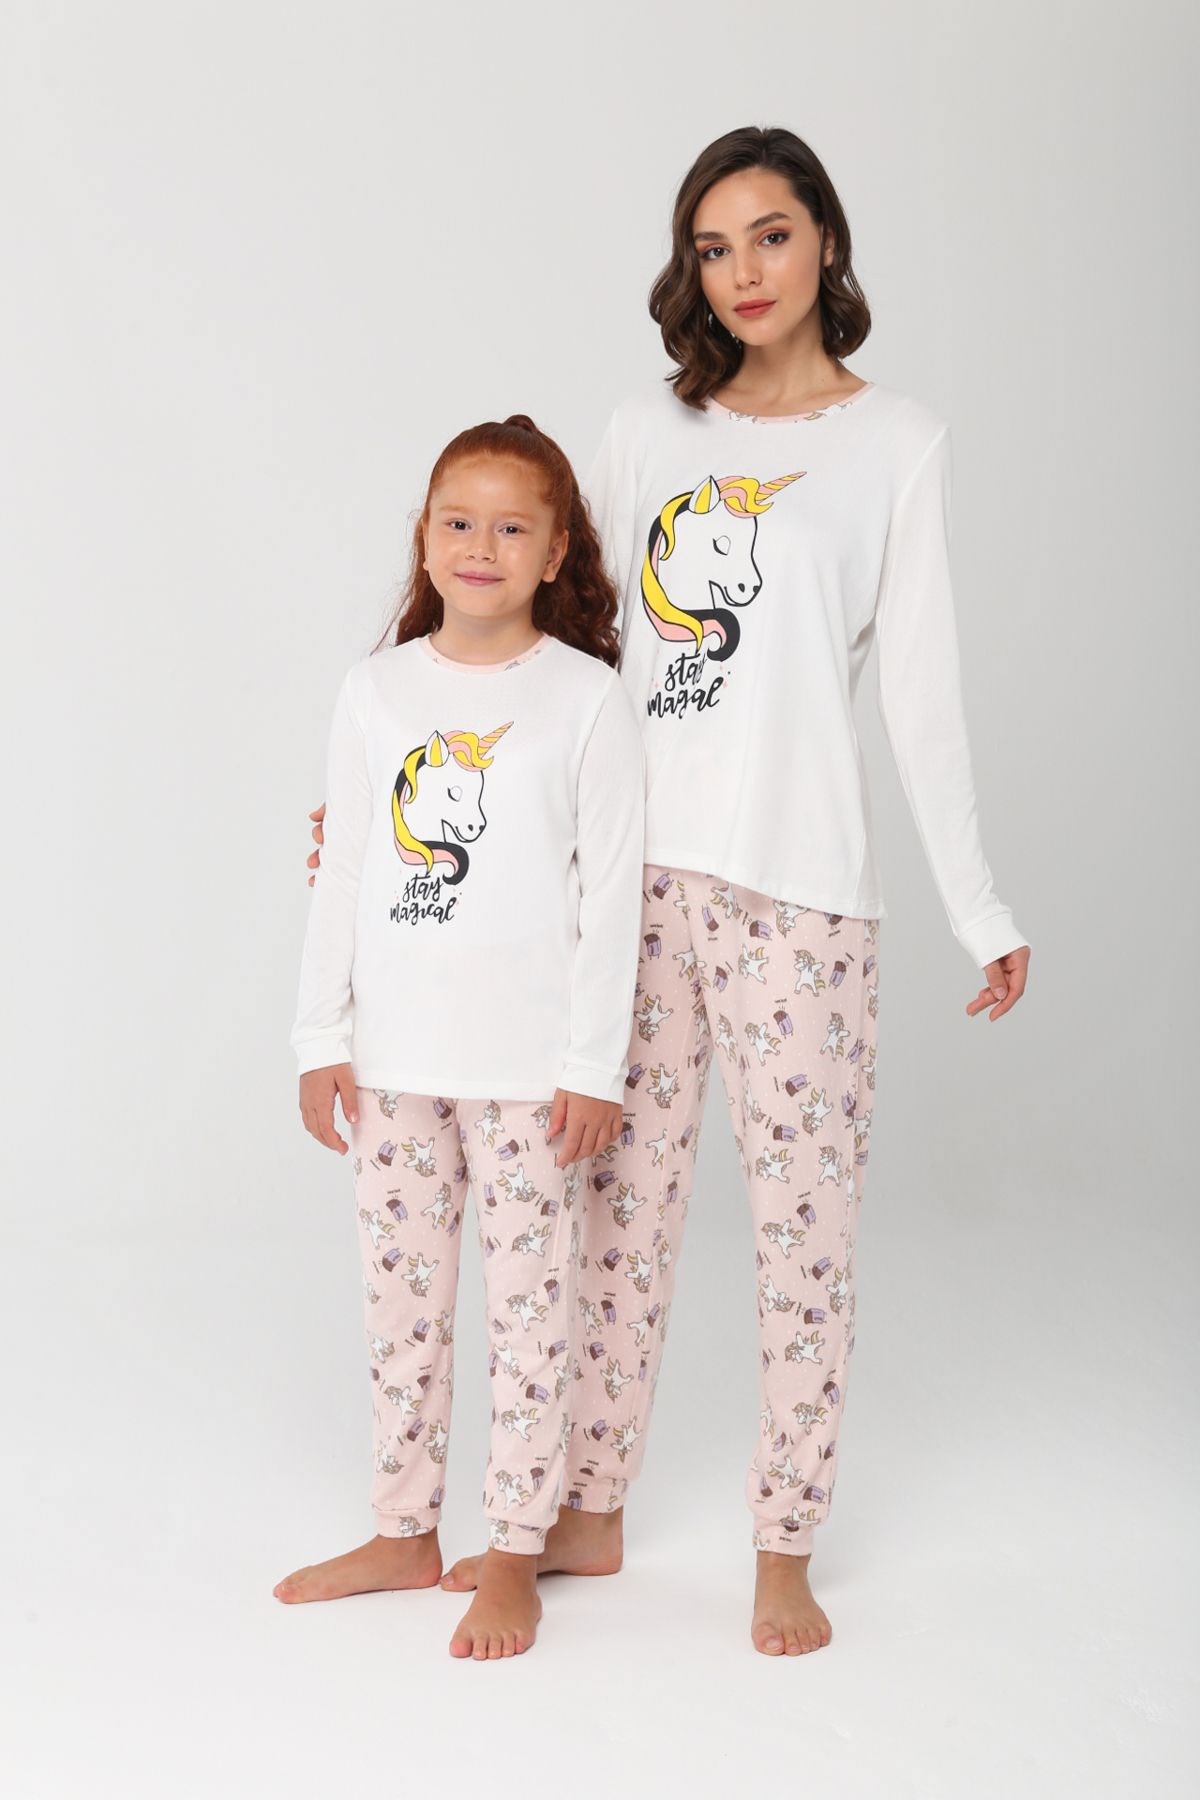 Unicorn Pijama Takımı.Anne Kız ayrı ayrı satılır